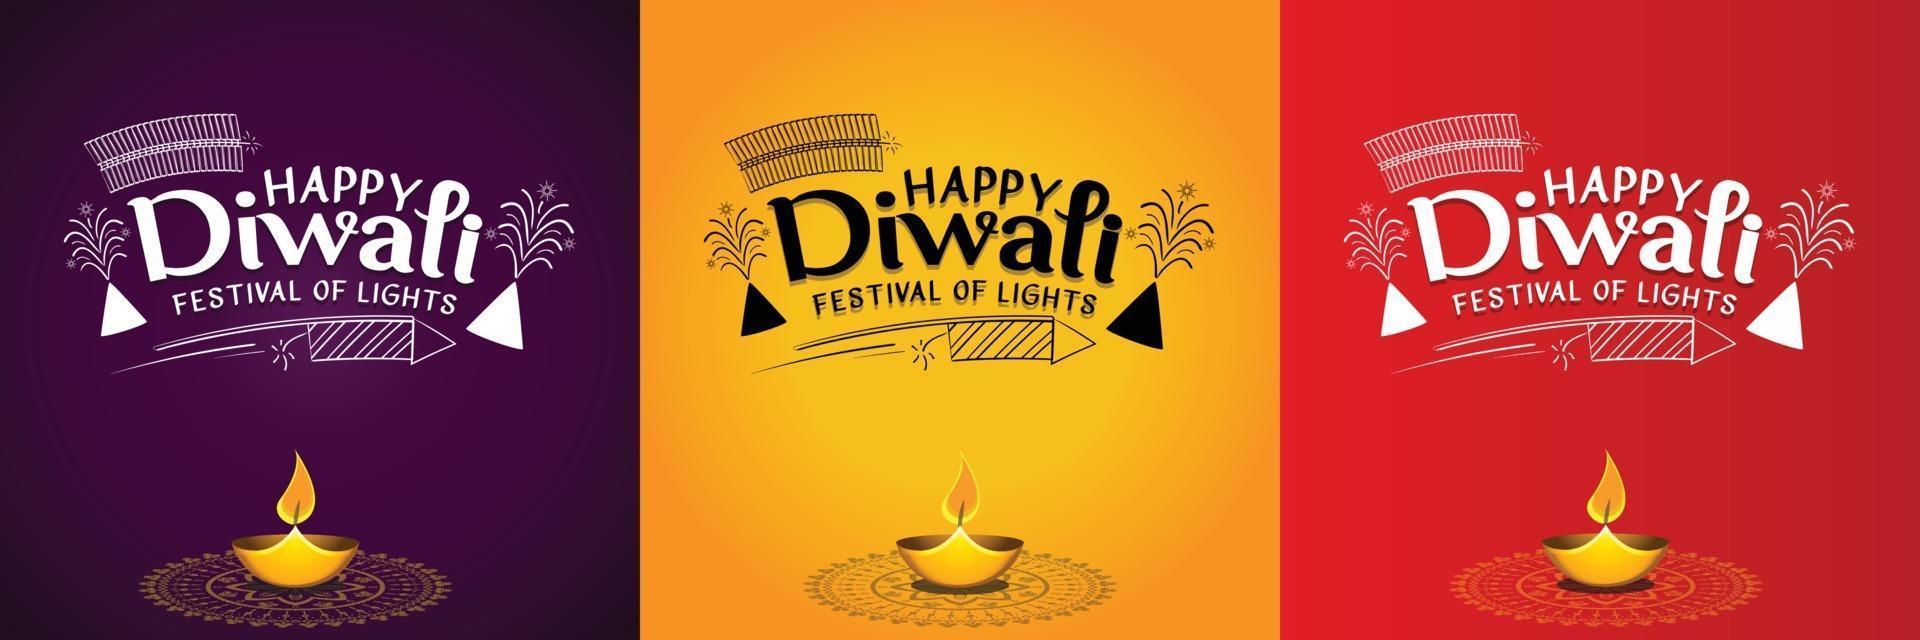 glada diwali -hälsningar med festliga dekorationer och fyrverkerier vektor